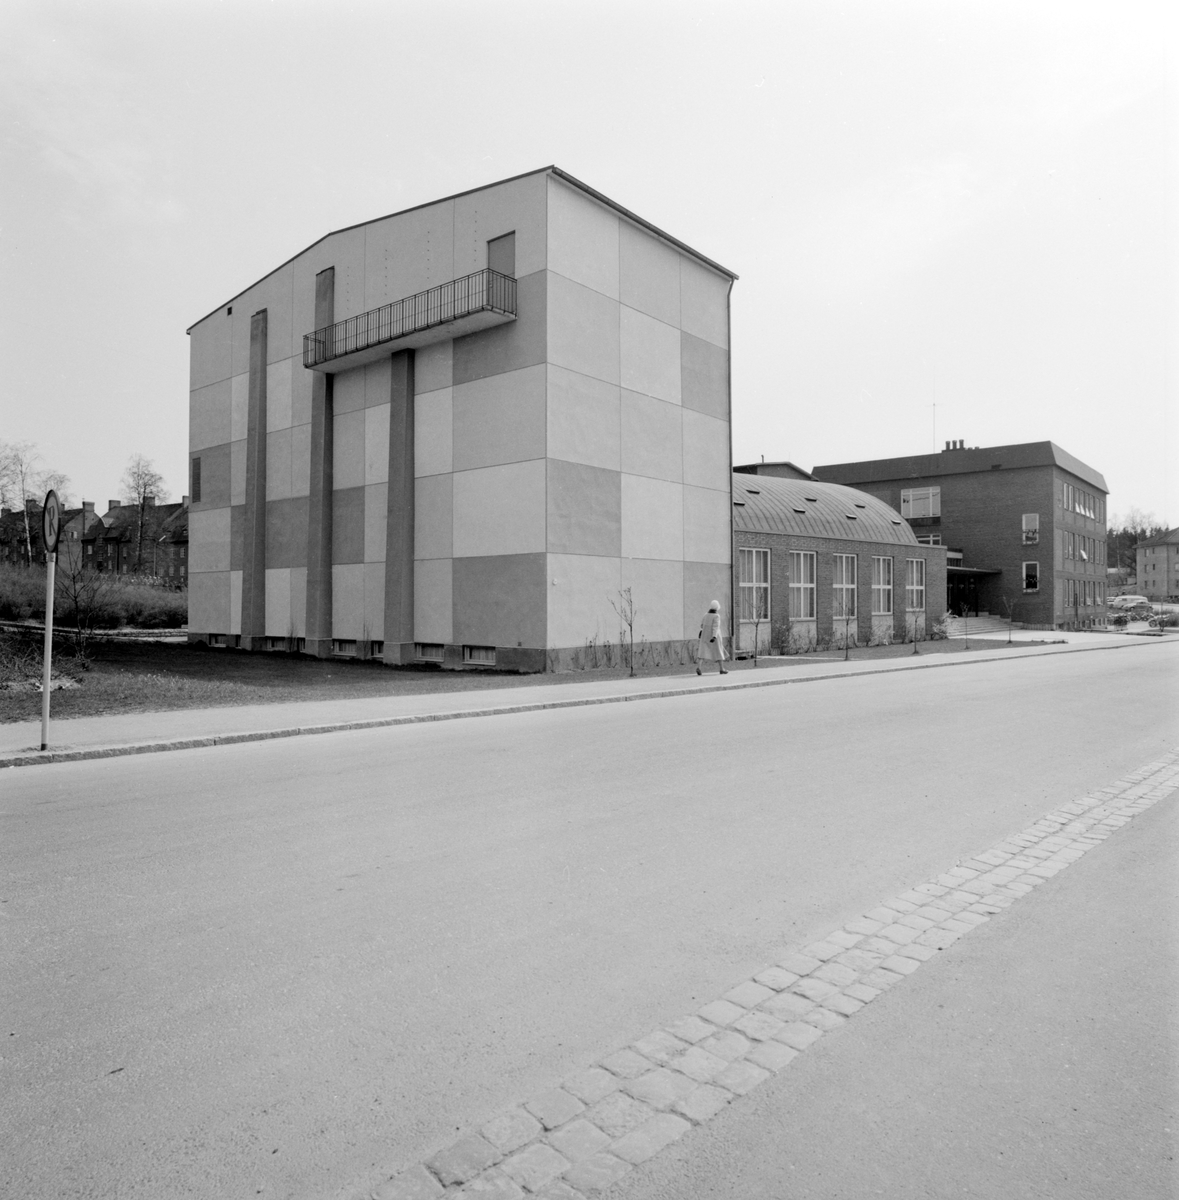 Lagmansskolan i Mjölby var planerad för samrealskolans behov men kom även att inrymma enhetsskolans högstadium och det kommunala gymnasiet. Skolan invigdes 1957.